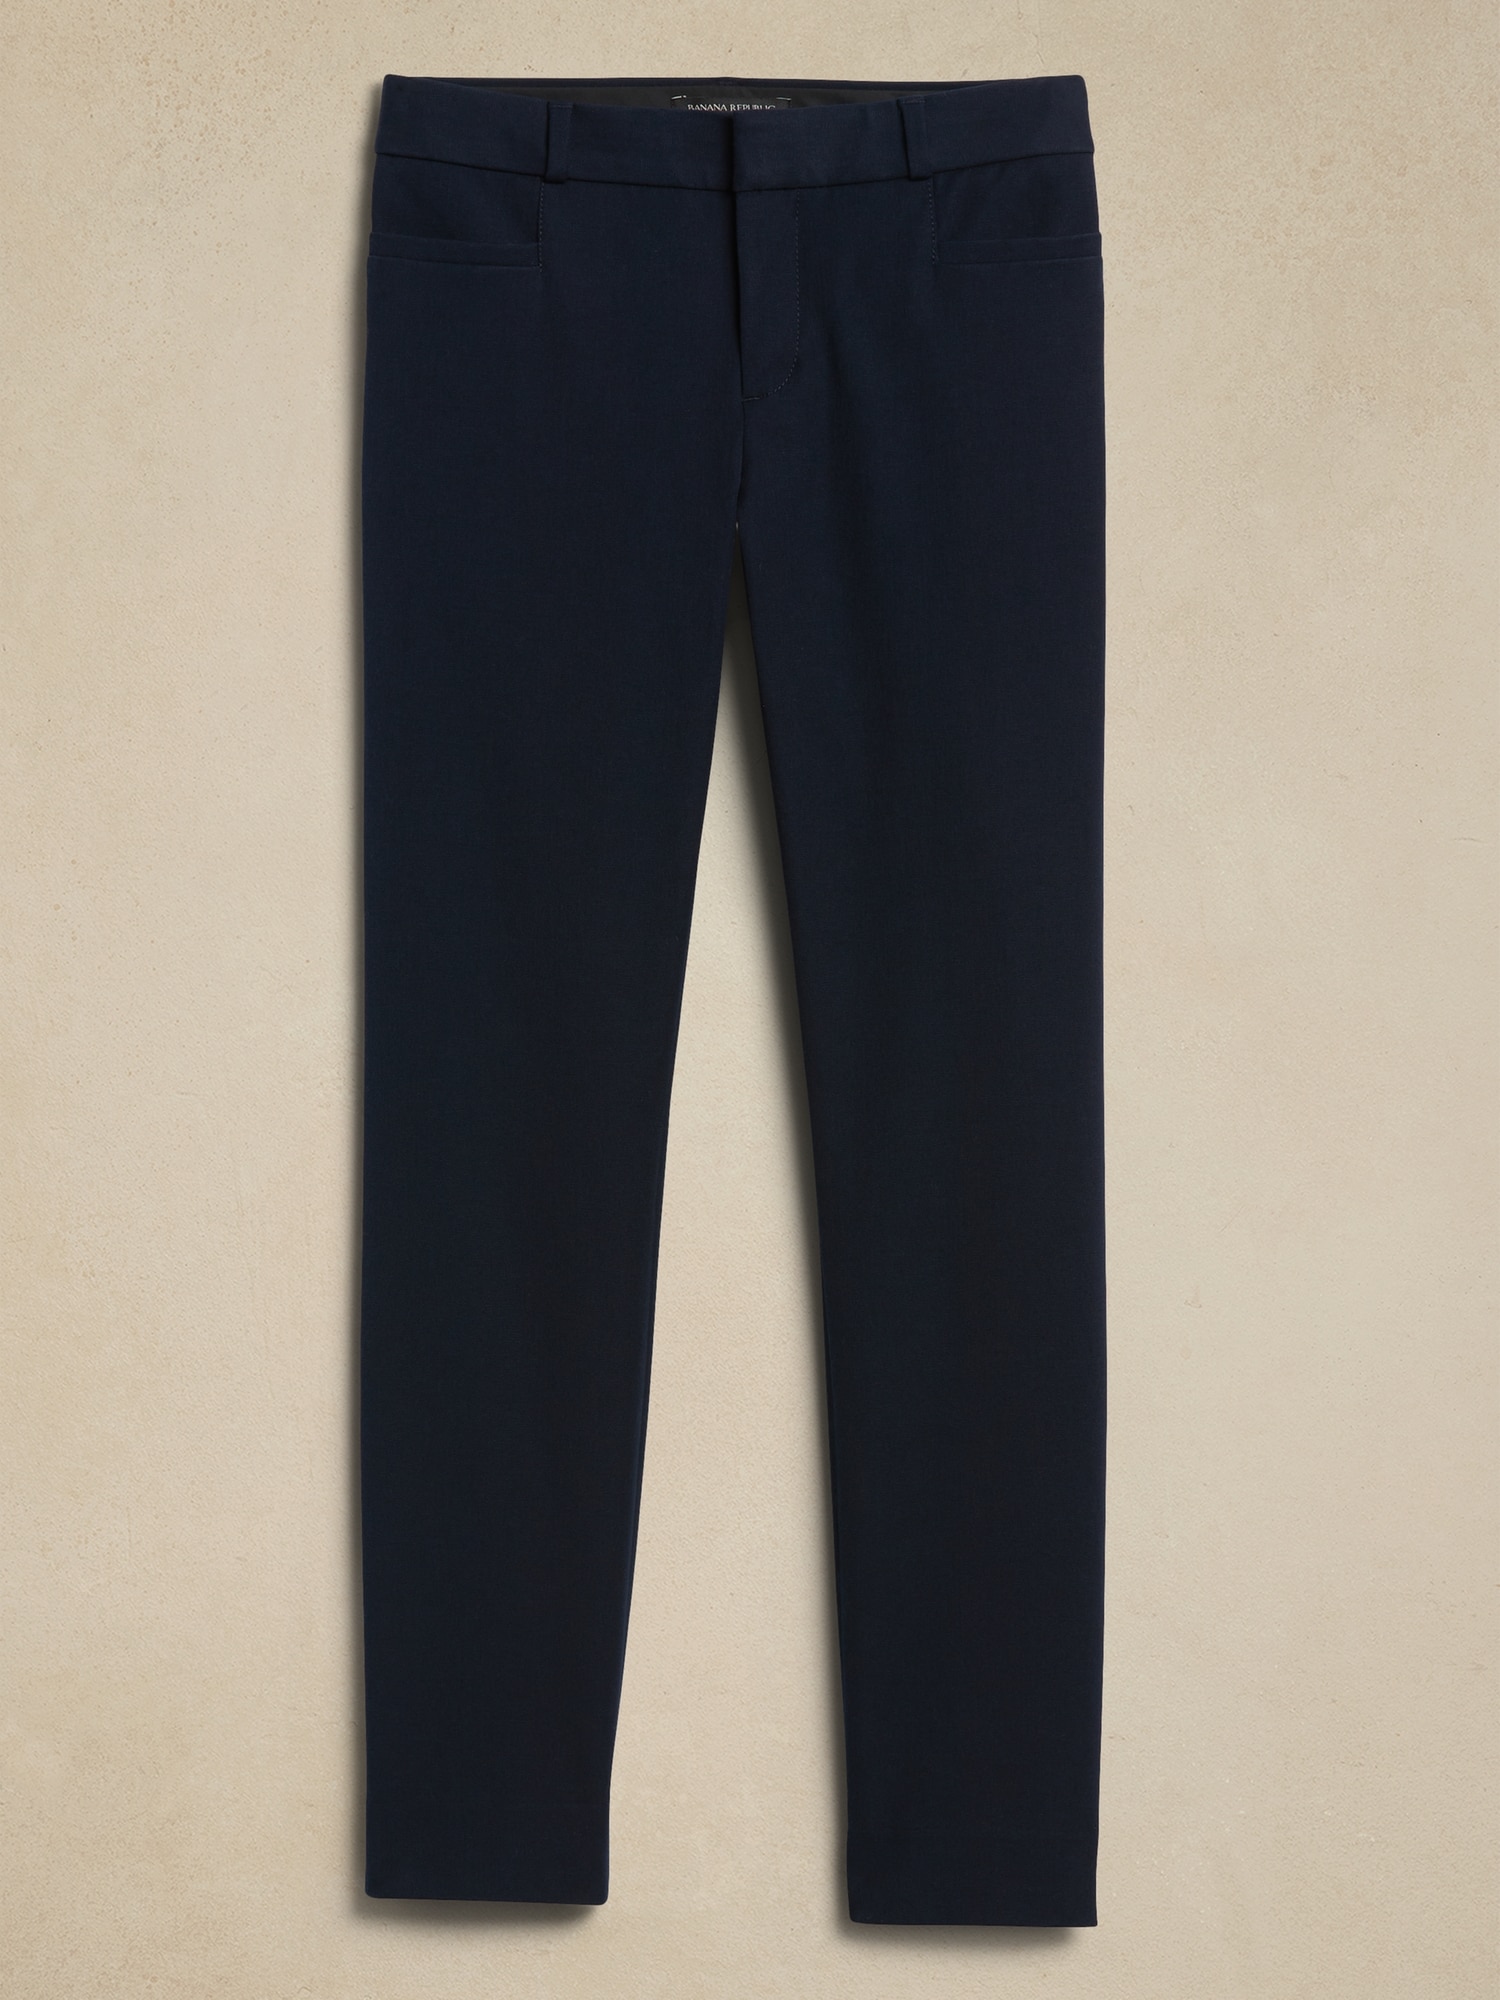 Banana Republic, Pants & Jumpsuits, Banana Republic Floral Print Sloan  Fit Crop Petite Pants Size P Black Blue